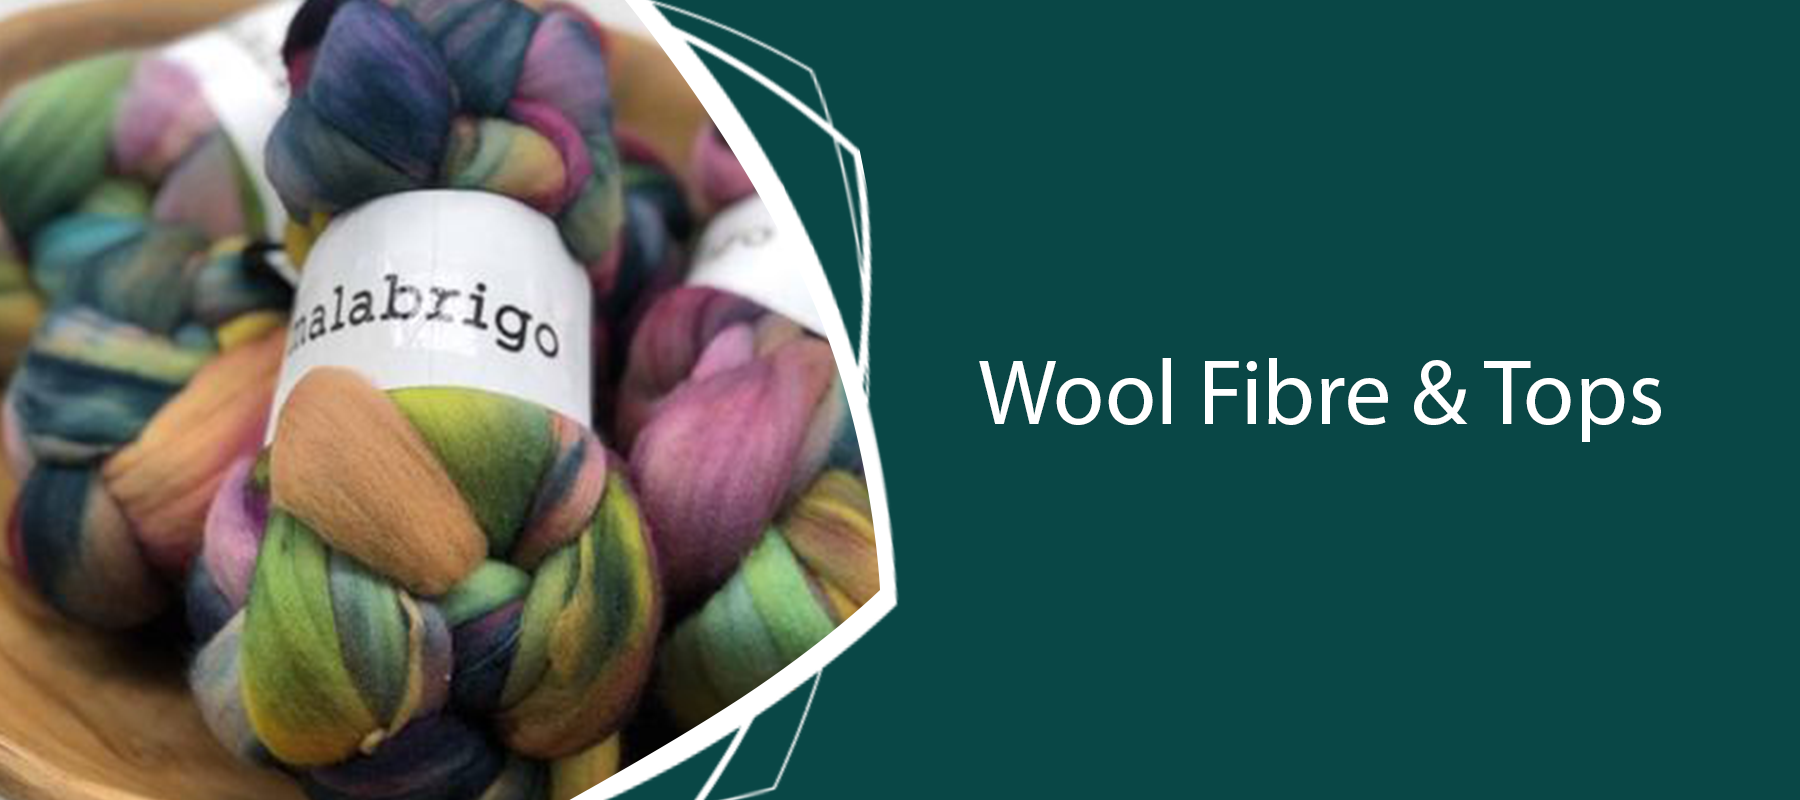 Wool Fibre & Tops: Spinning & Felting Fibre